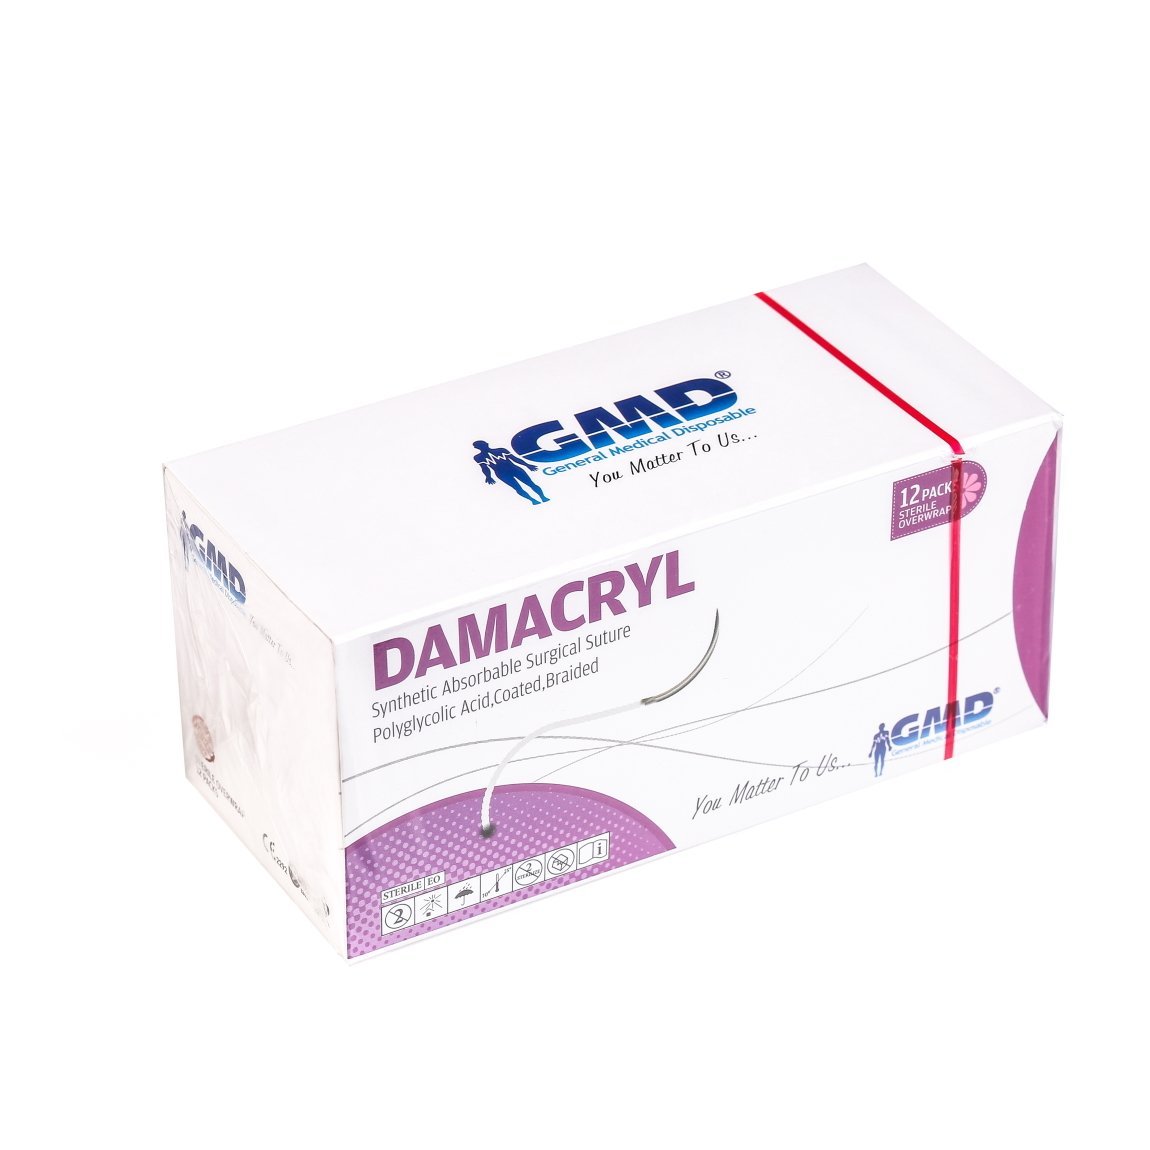 Damacryl Emilebilir Cerrahi Sütür - PGA İplik - USP:2-0-75cm - 1/2 Daire 26 mm - Yuvarlak İğne